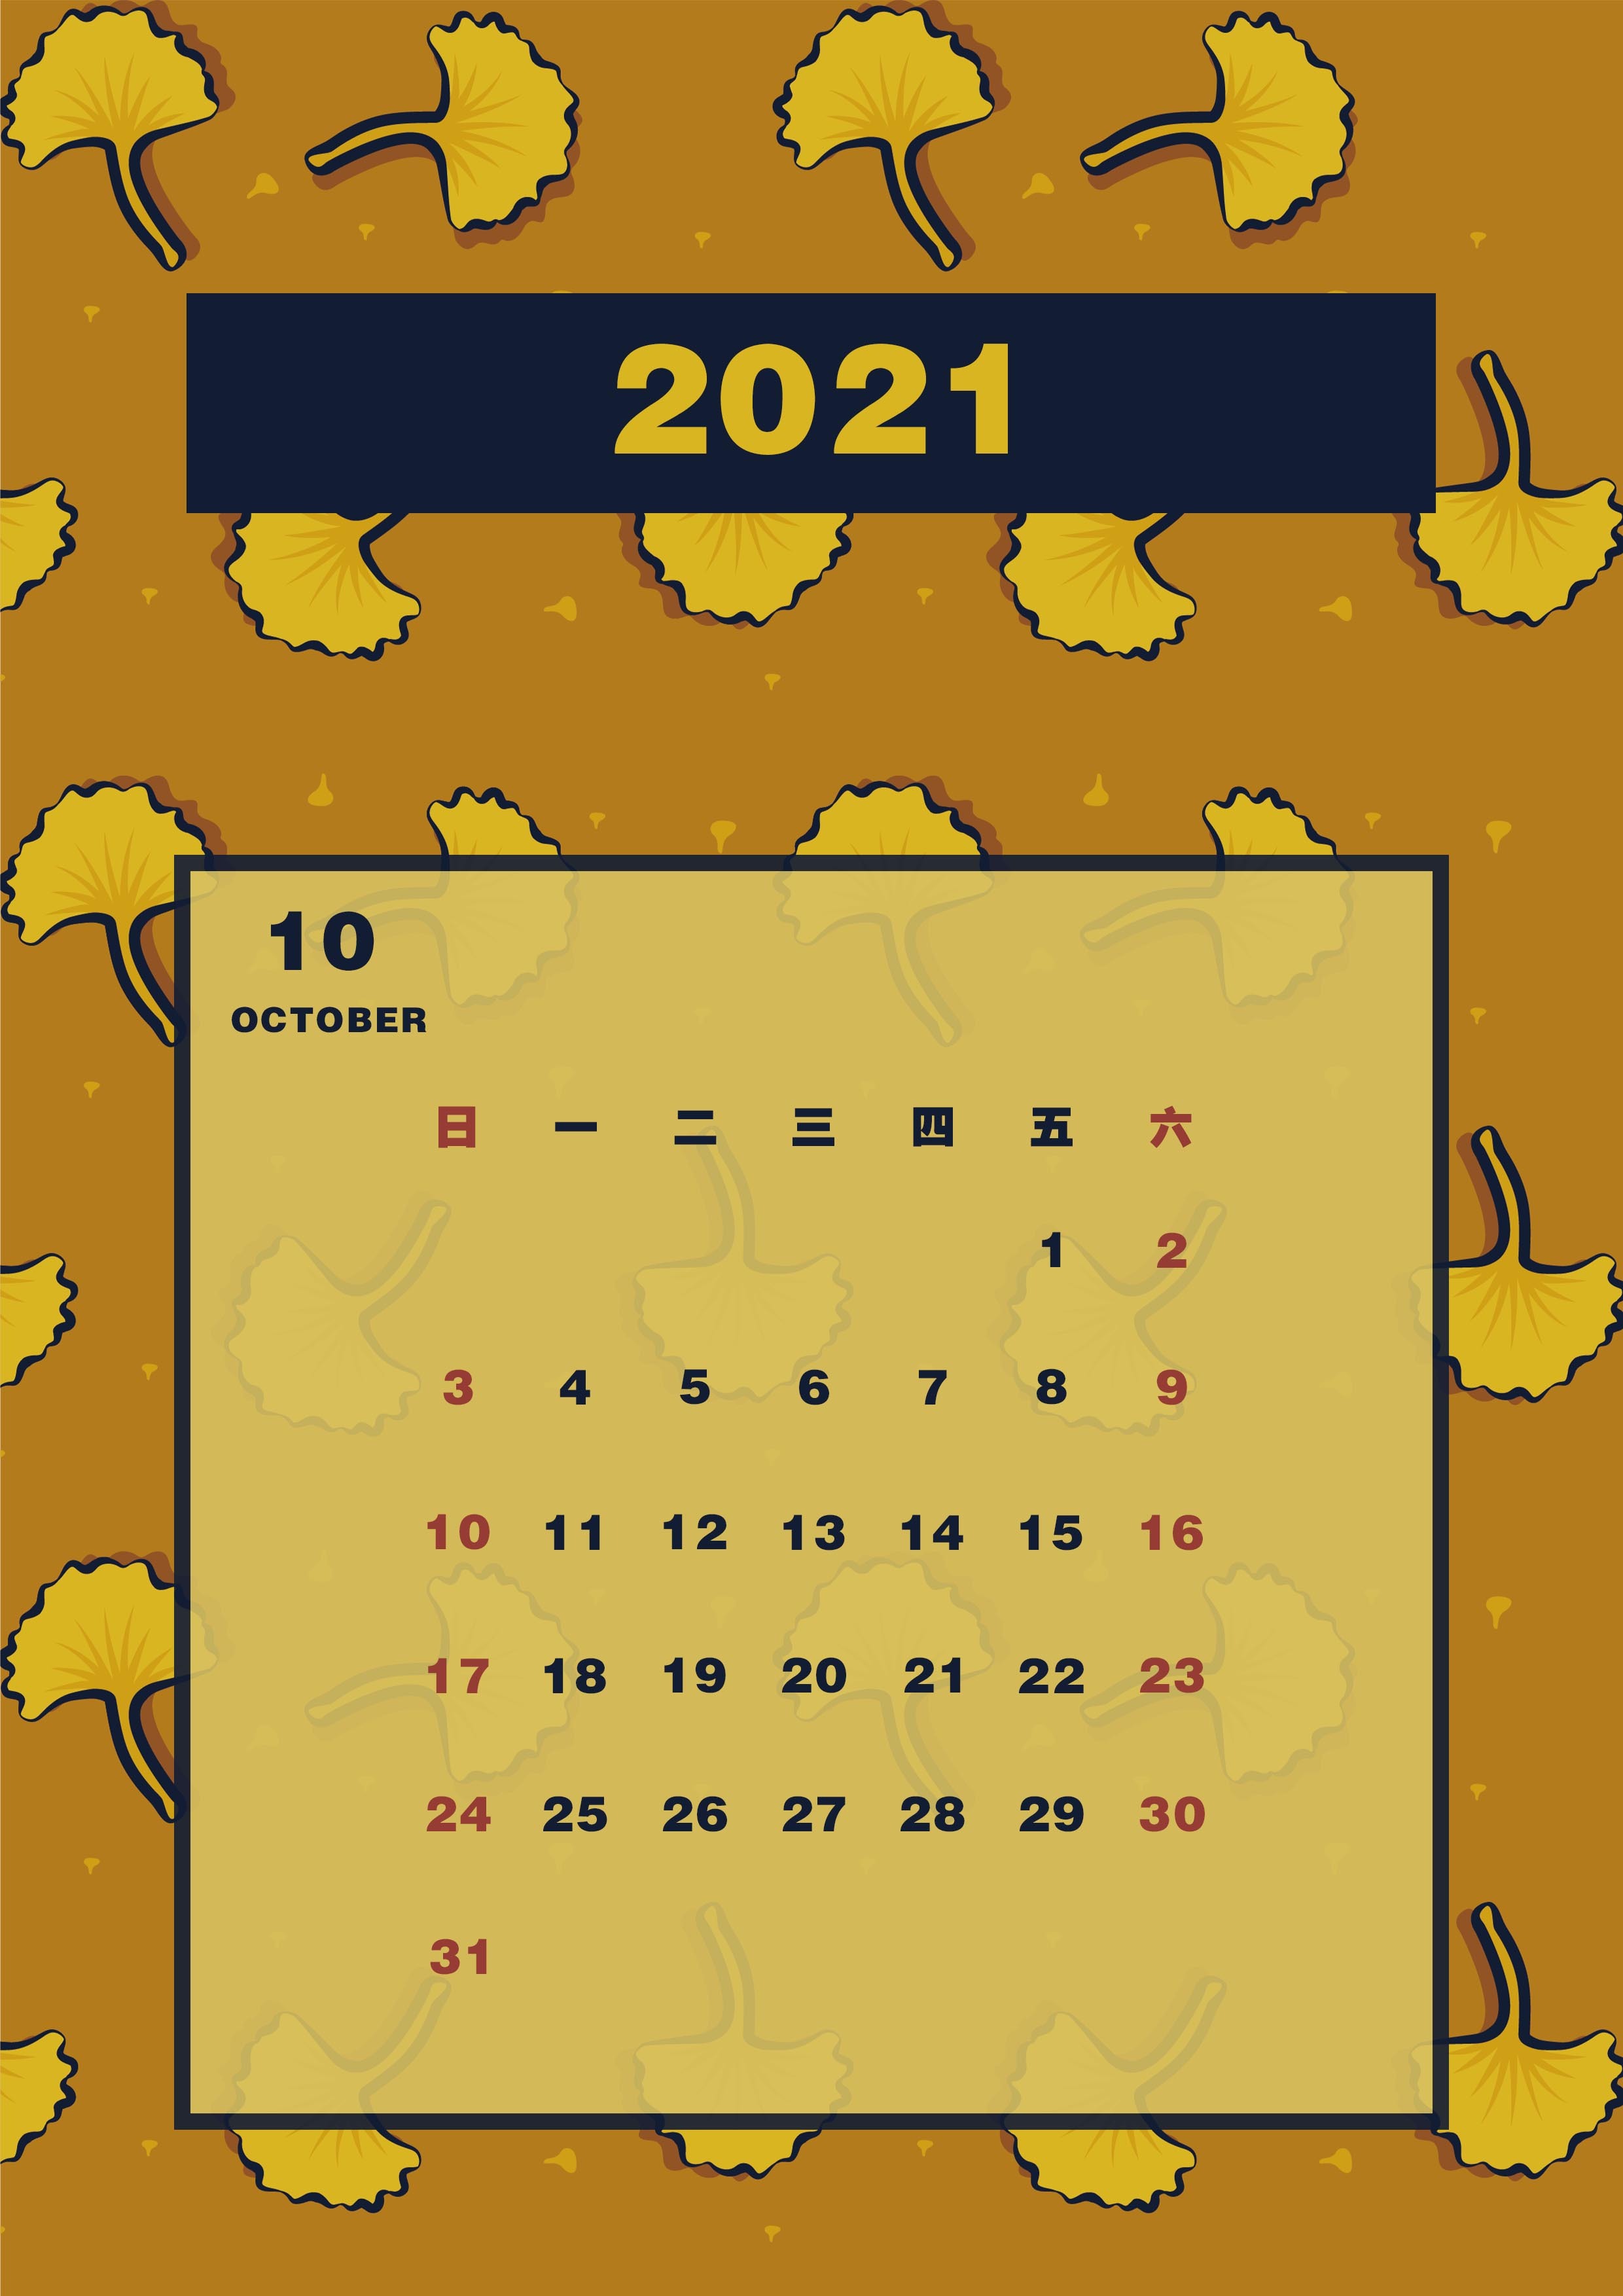 2021年新年日历以及纹样